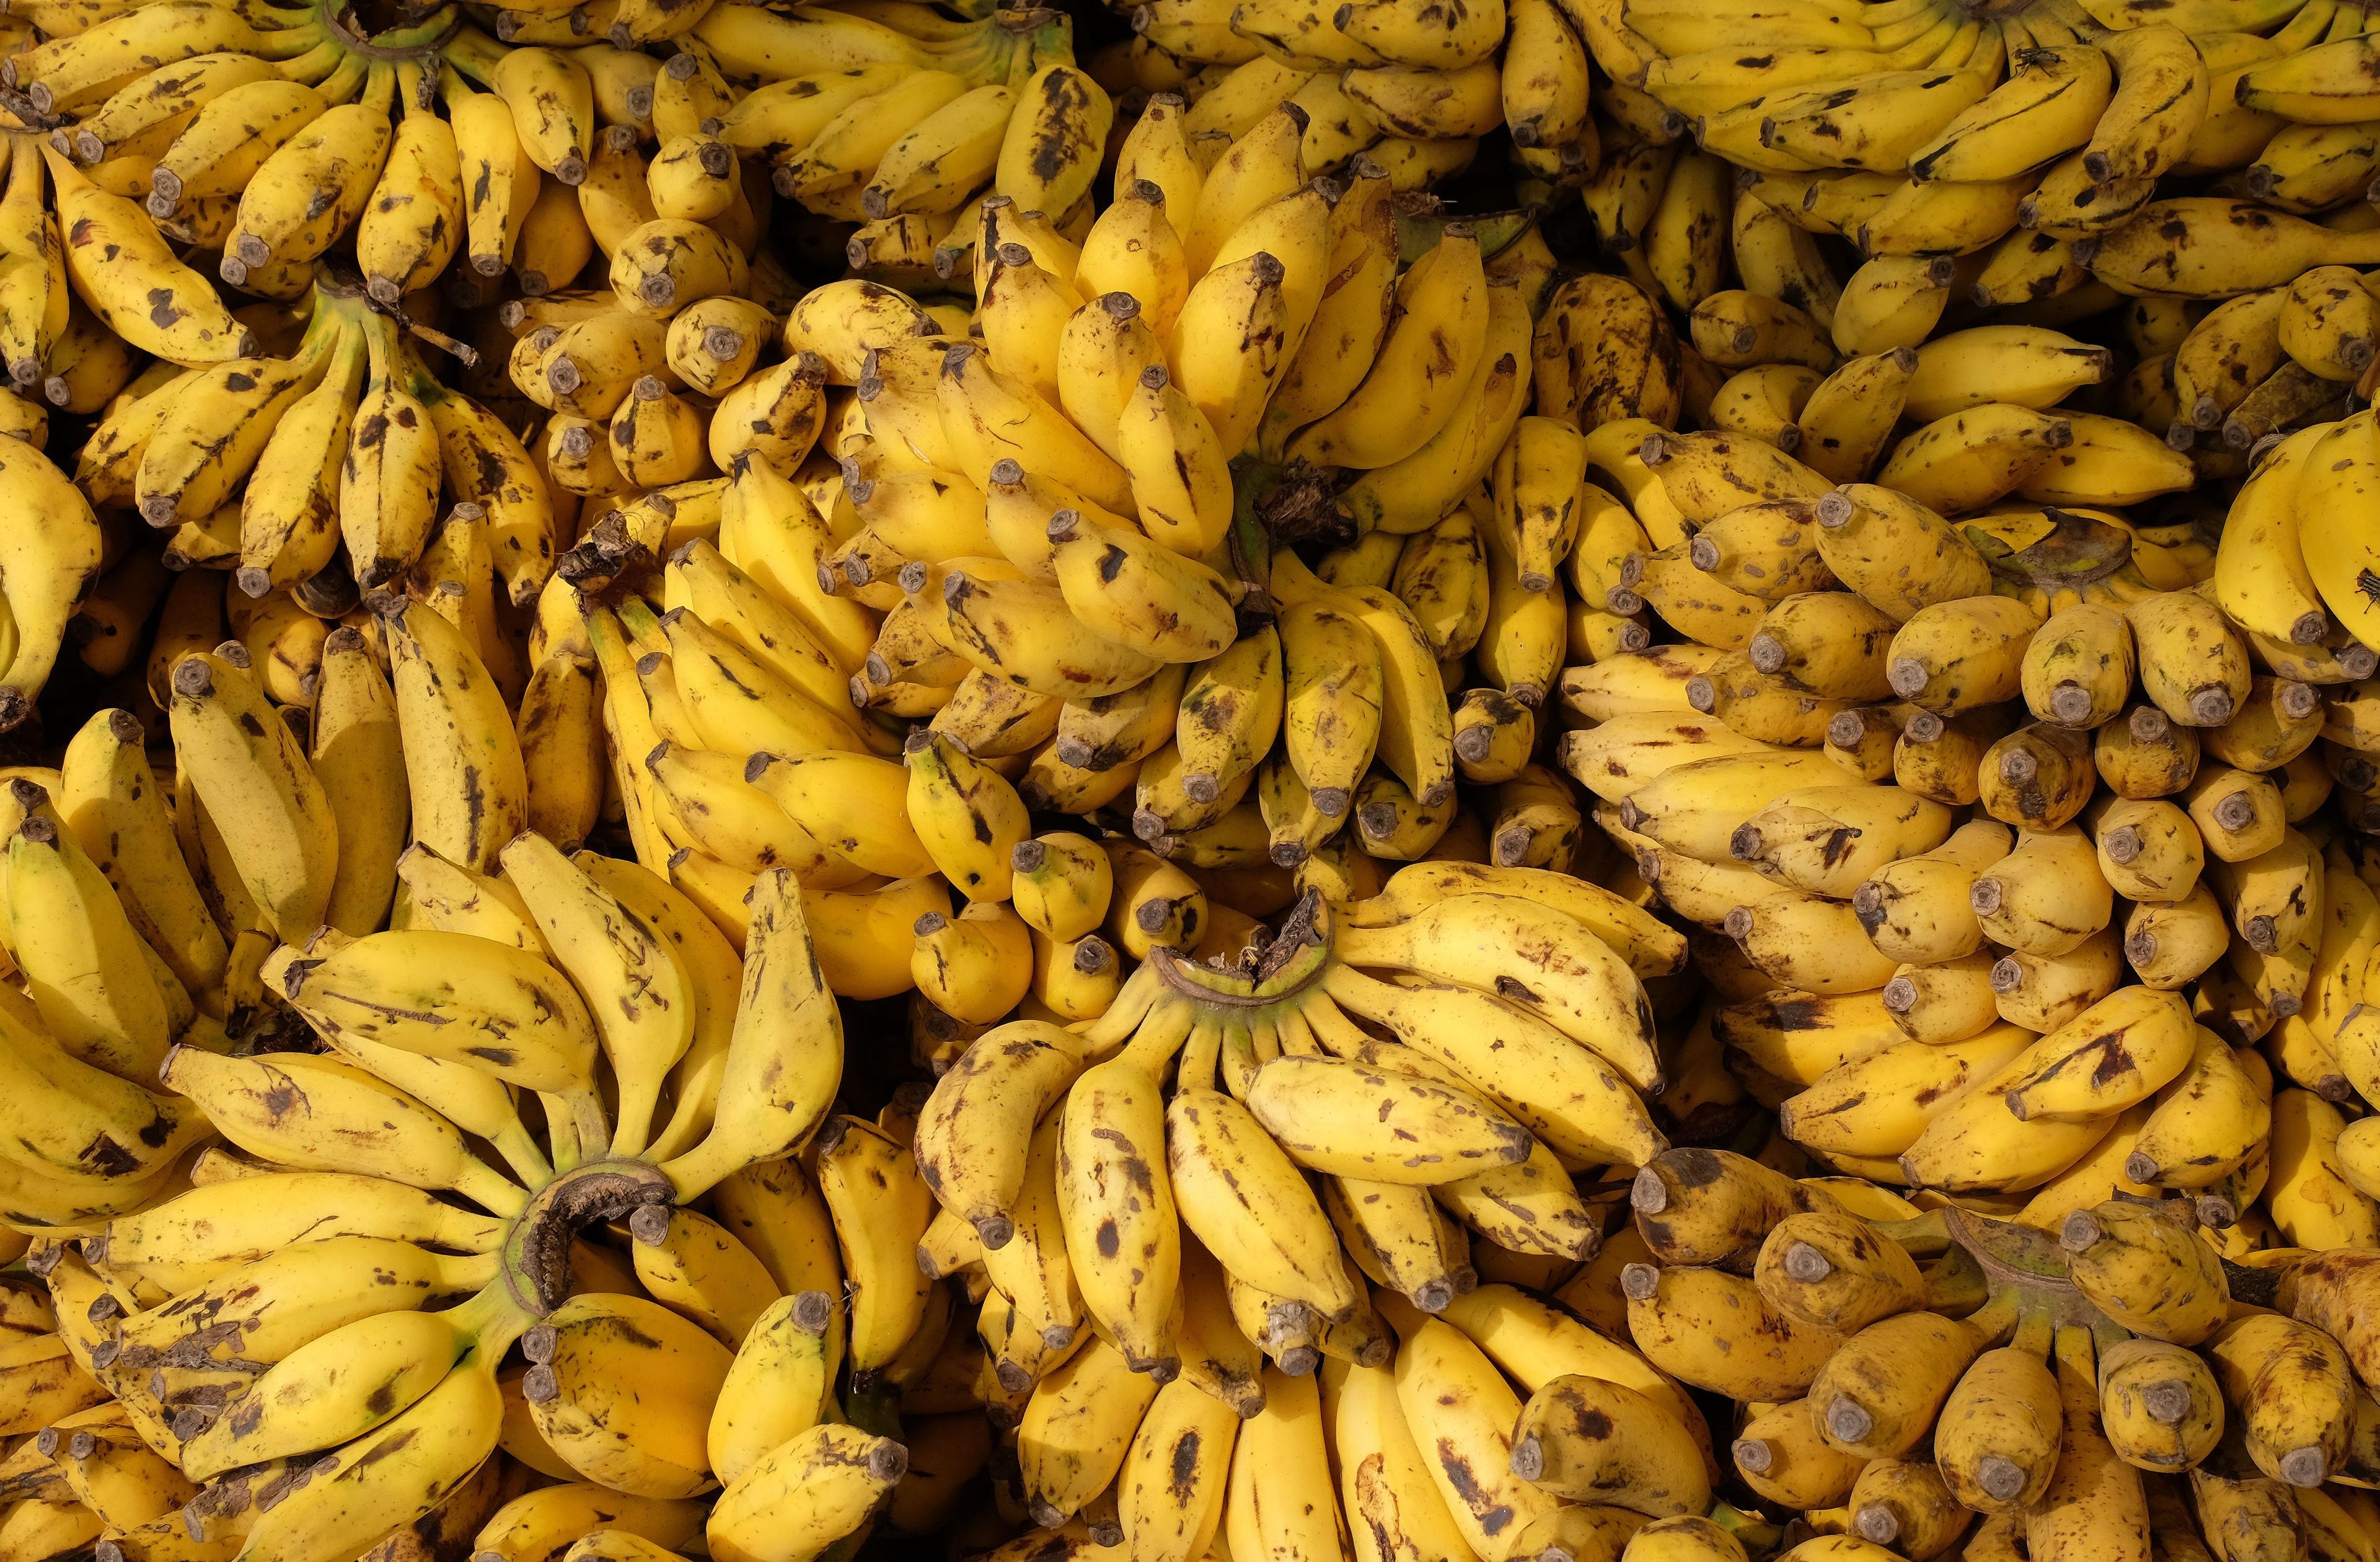 Bananen werden derzeit unter Verwendung gefährlicher Pestizide und in einigen Fällen unter sehr schlechten Arbeitsbedingungen in großen Mengen für den Weltmarkt produziert.